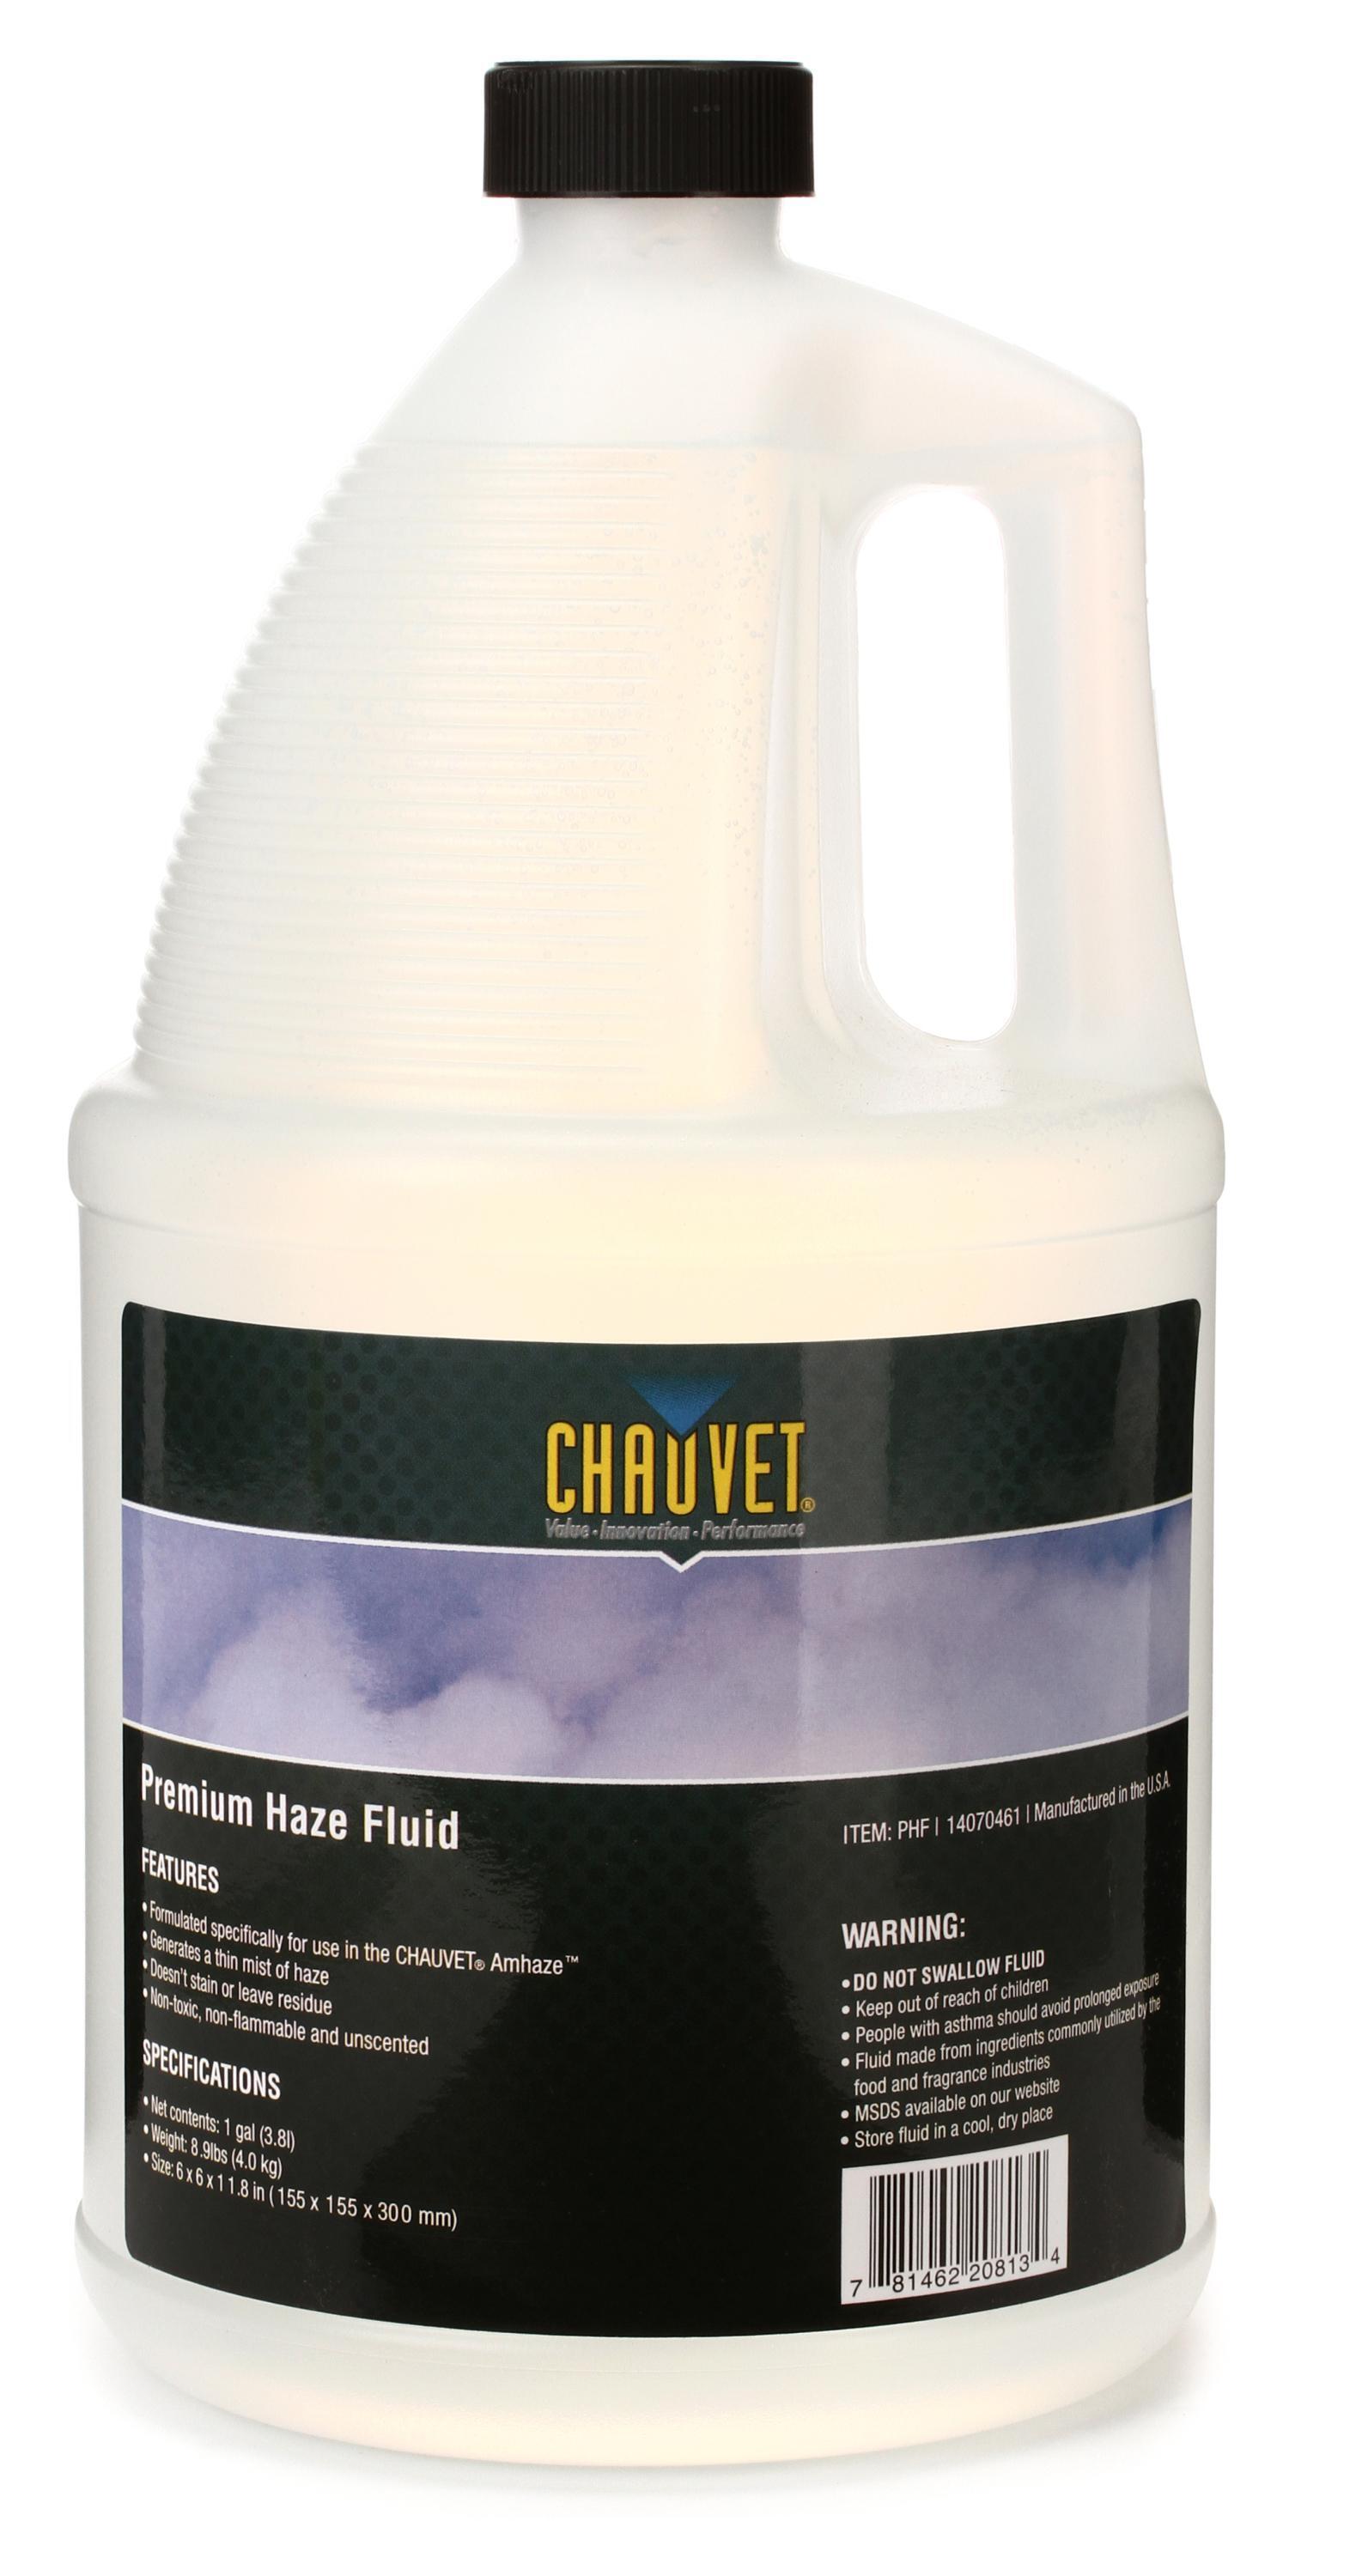 Bundled Item: Chauvet Pro PHF Premium Haze Fluid - 1 Gallon